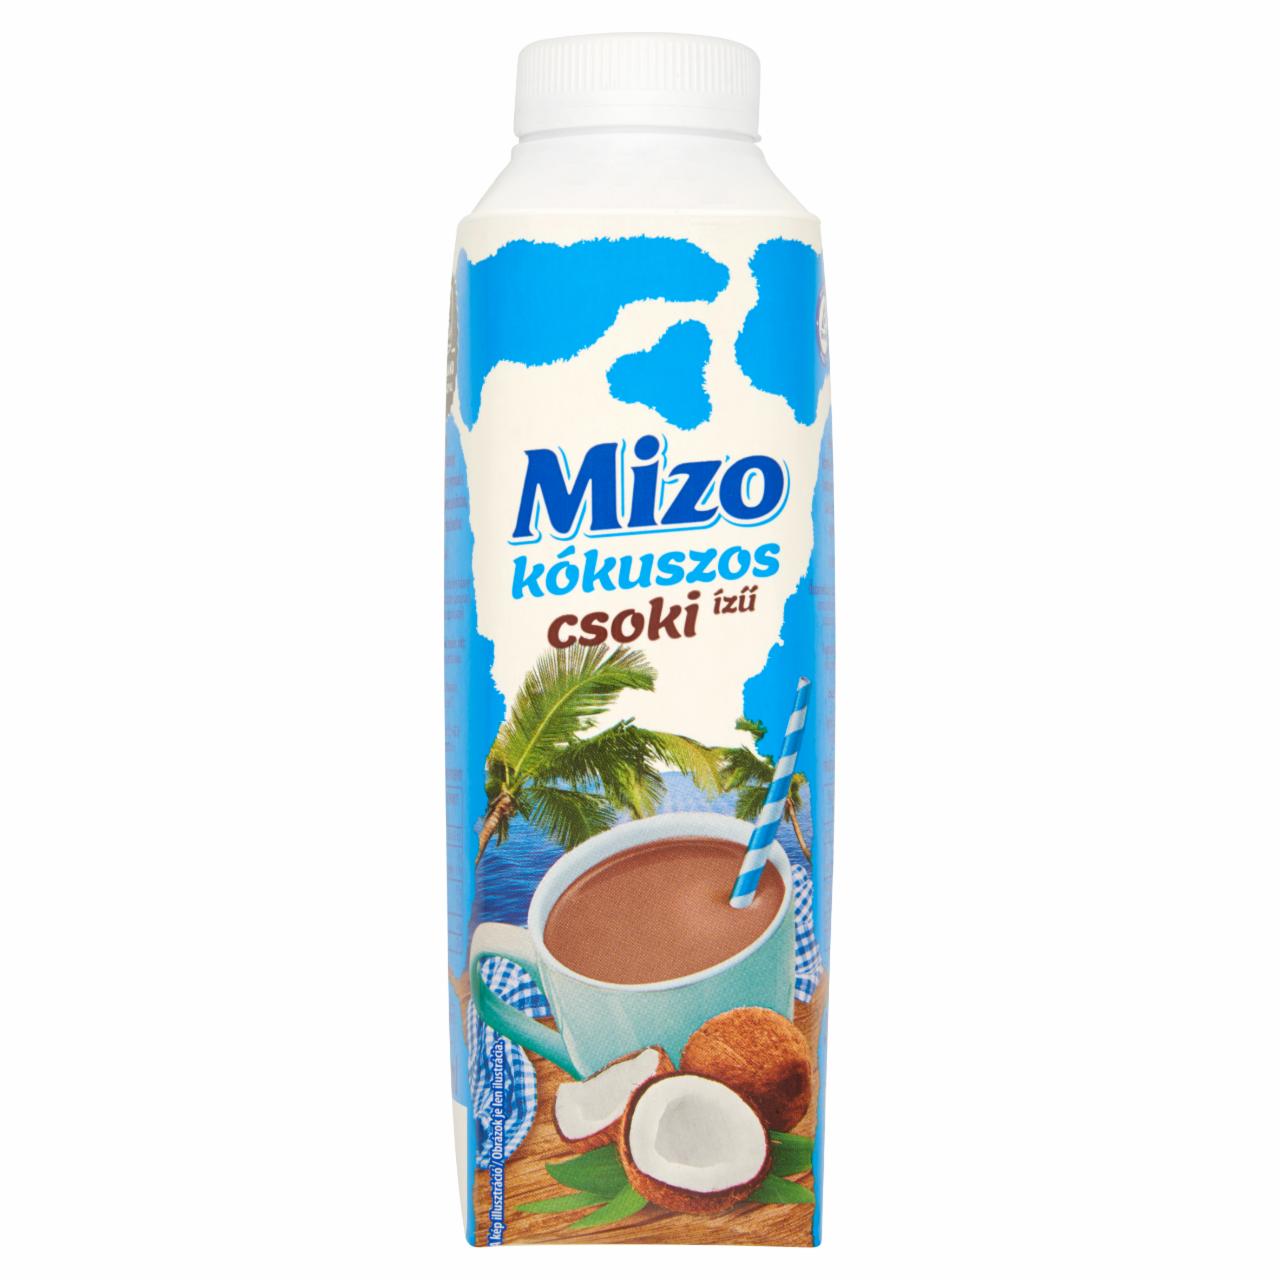 Képek - Mizo kókuszos-csoki ízű, zsírszegény kakaós tejkészítmény 450 ml